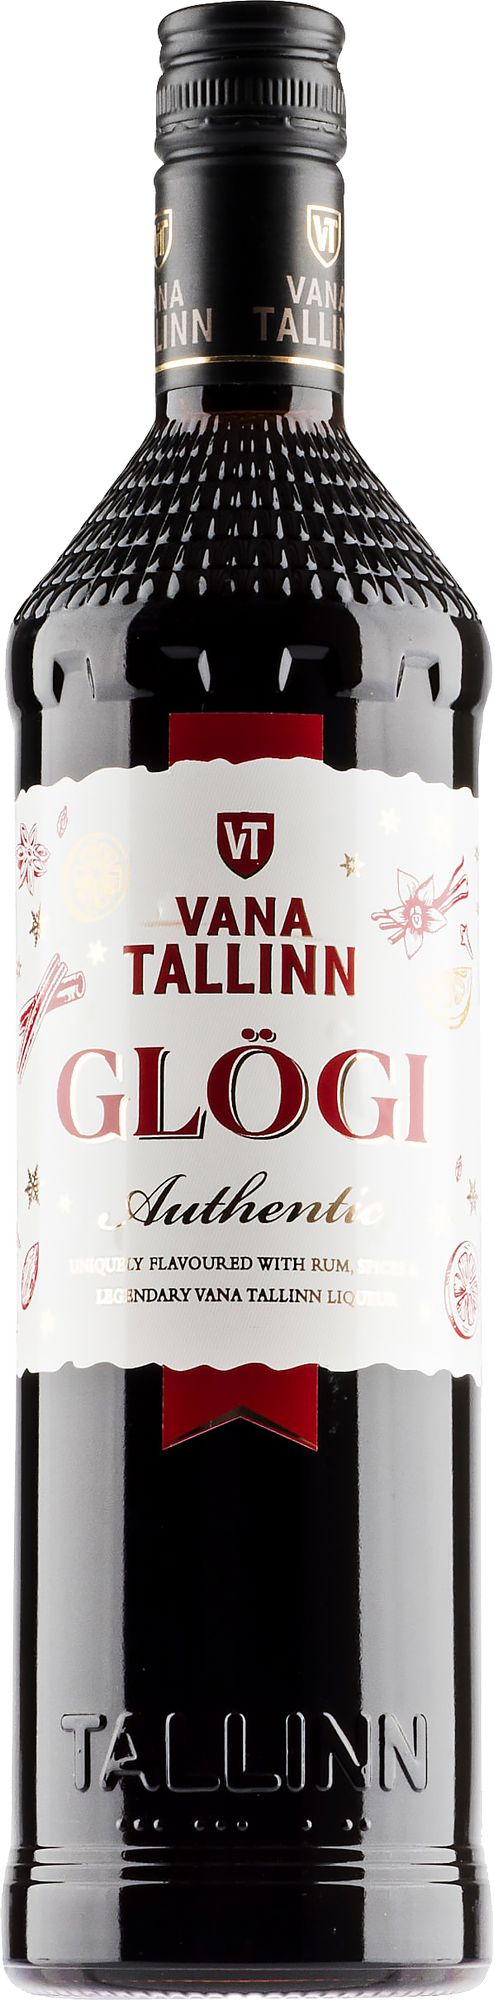 Vana Tallinn Glögi on tymäkkää ja tuhtia. Tällä glögillä on varmasti oma kannattajakuntansa. 